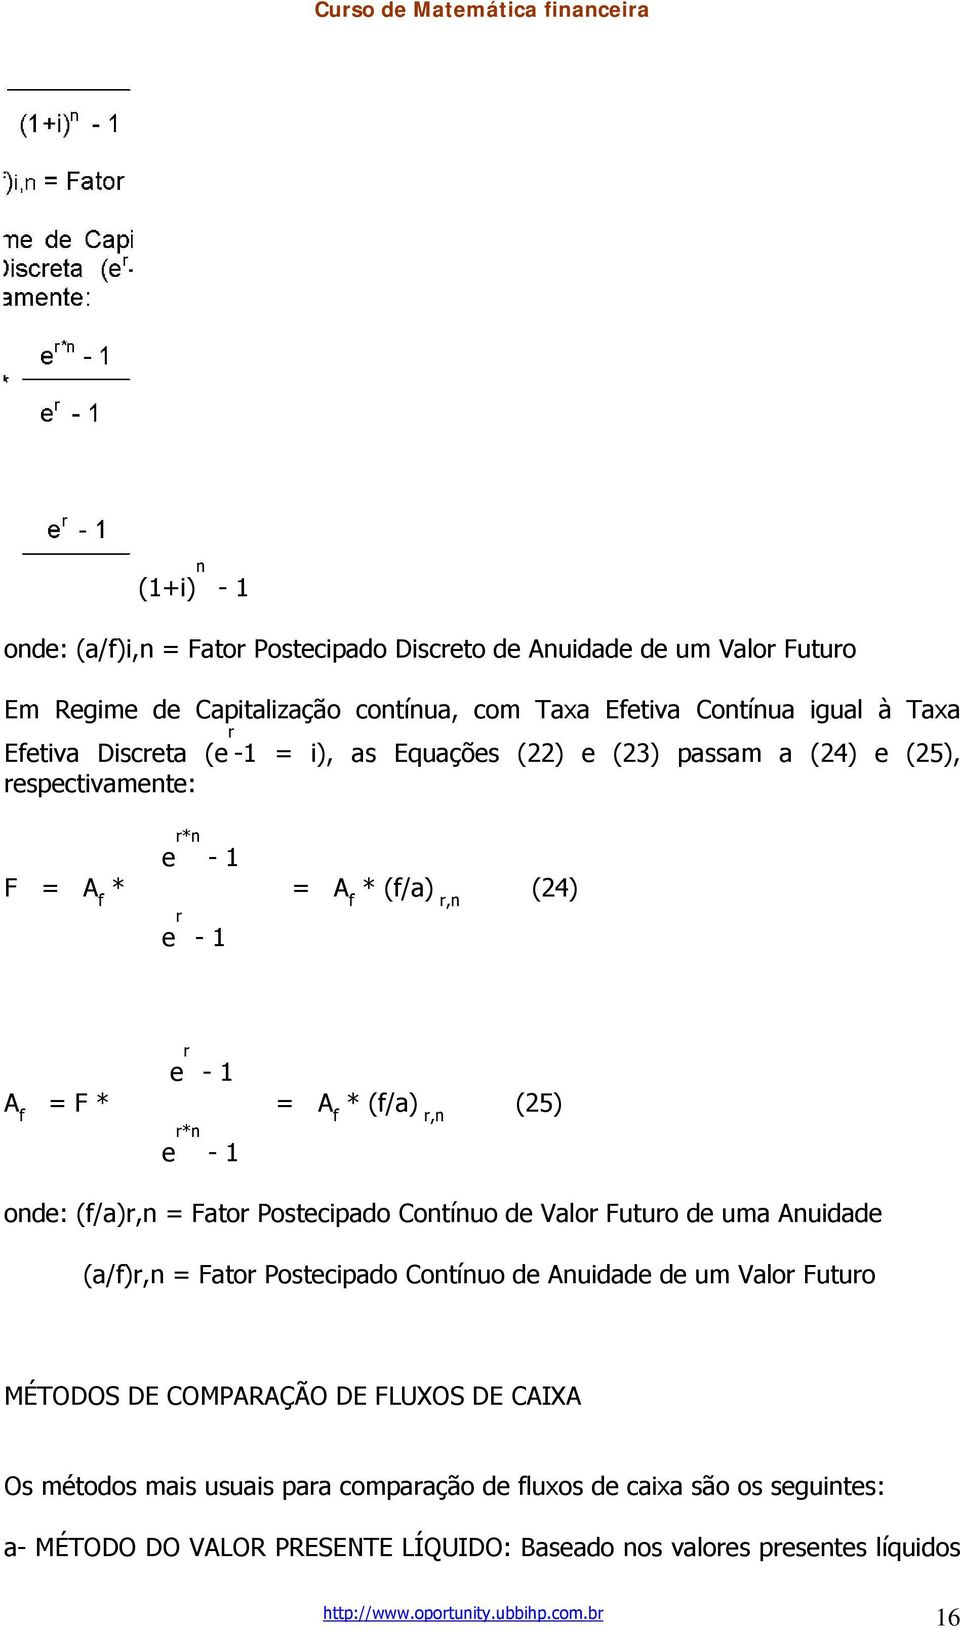 (f/a)r,n = Fator Postecipado Contínuo de Valor Futuro de uma Anuidade (a/f)r,n = Fator Postecipado Contínuo de Anuidade de um Valor Futuro MÉTODOS DE COMPARAÇÃO DE FLUXOS DE CAIXA Os